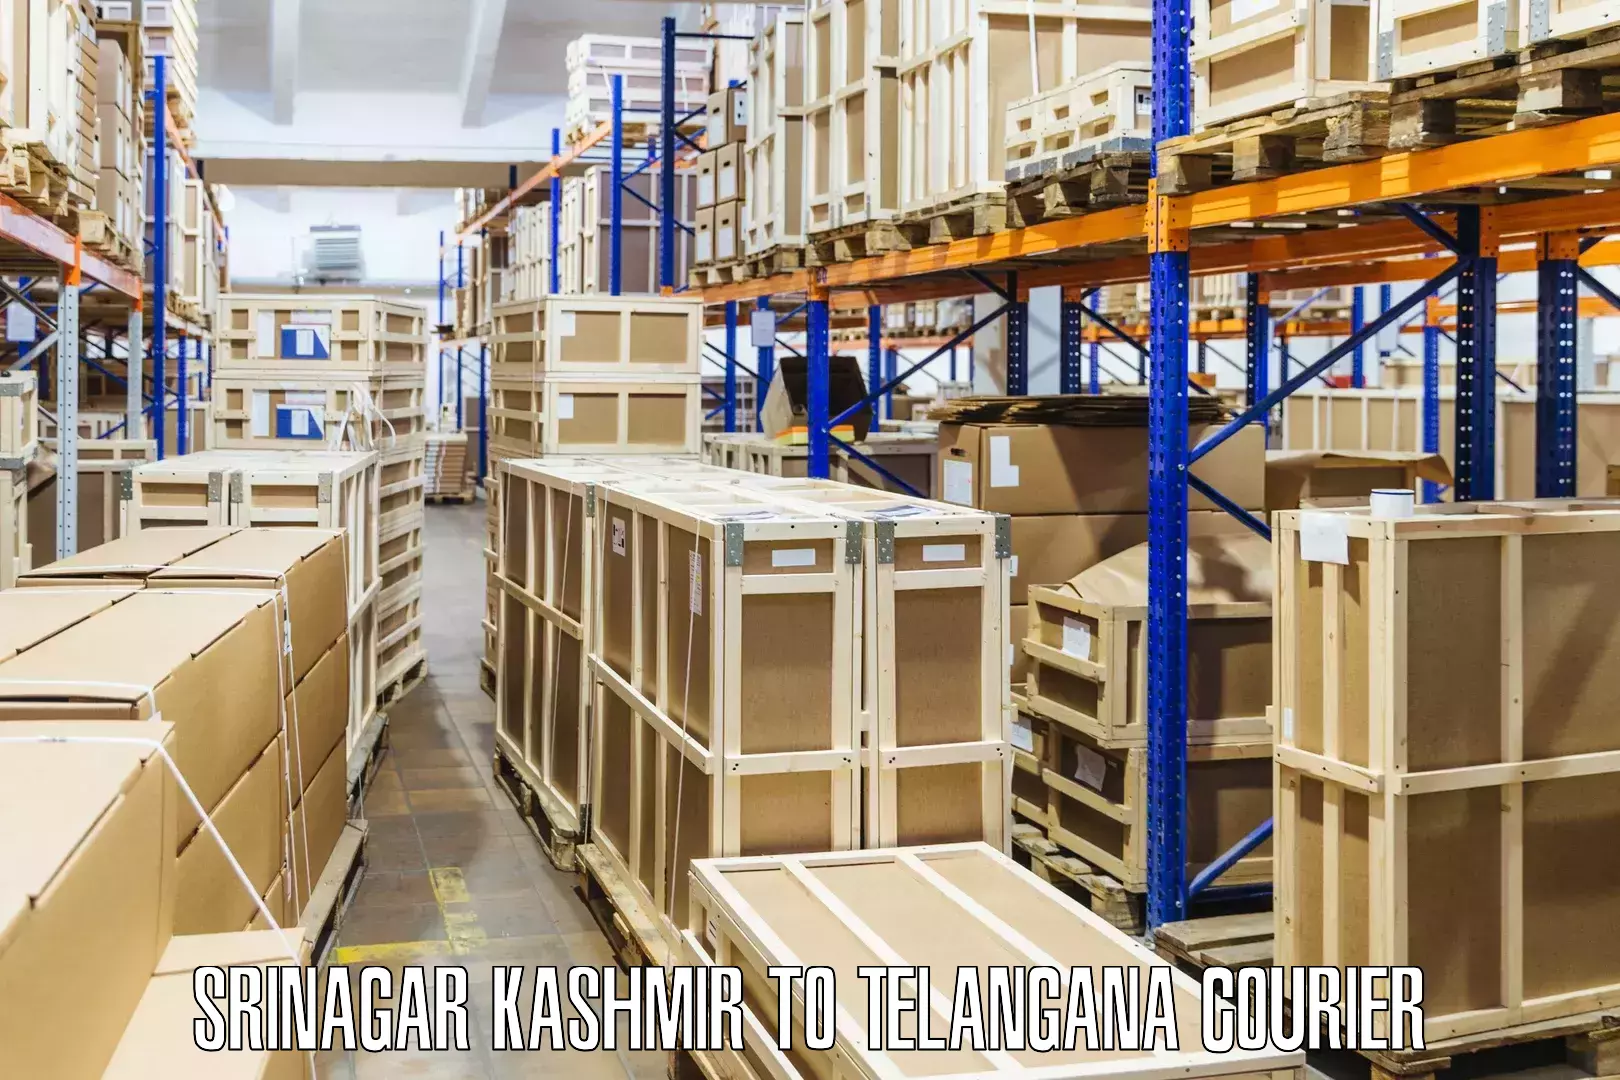 24/7 courier service in Srinagar Kashmir to Kosgi